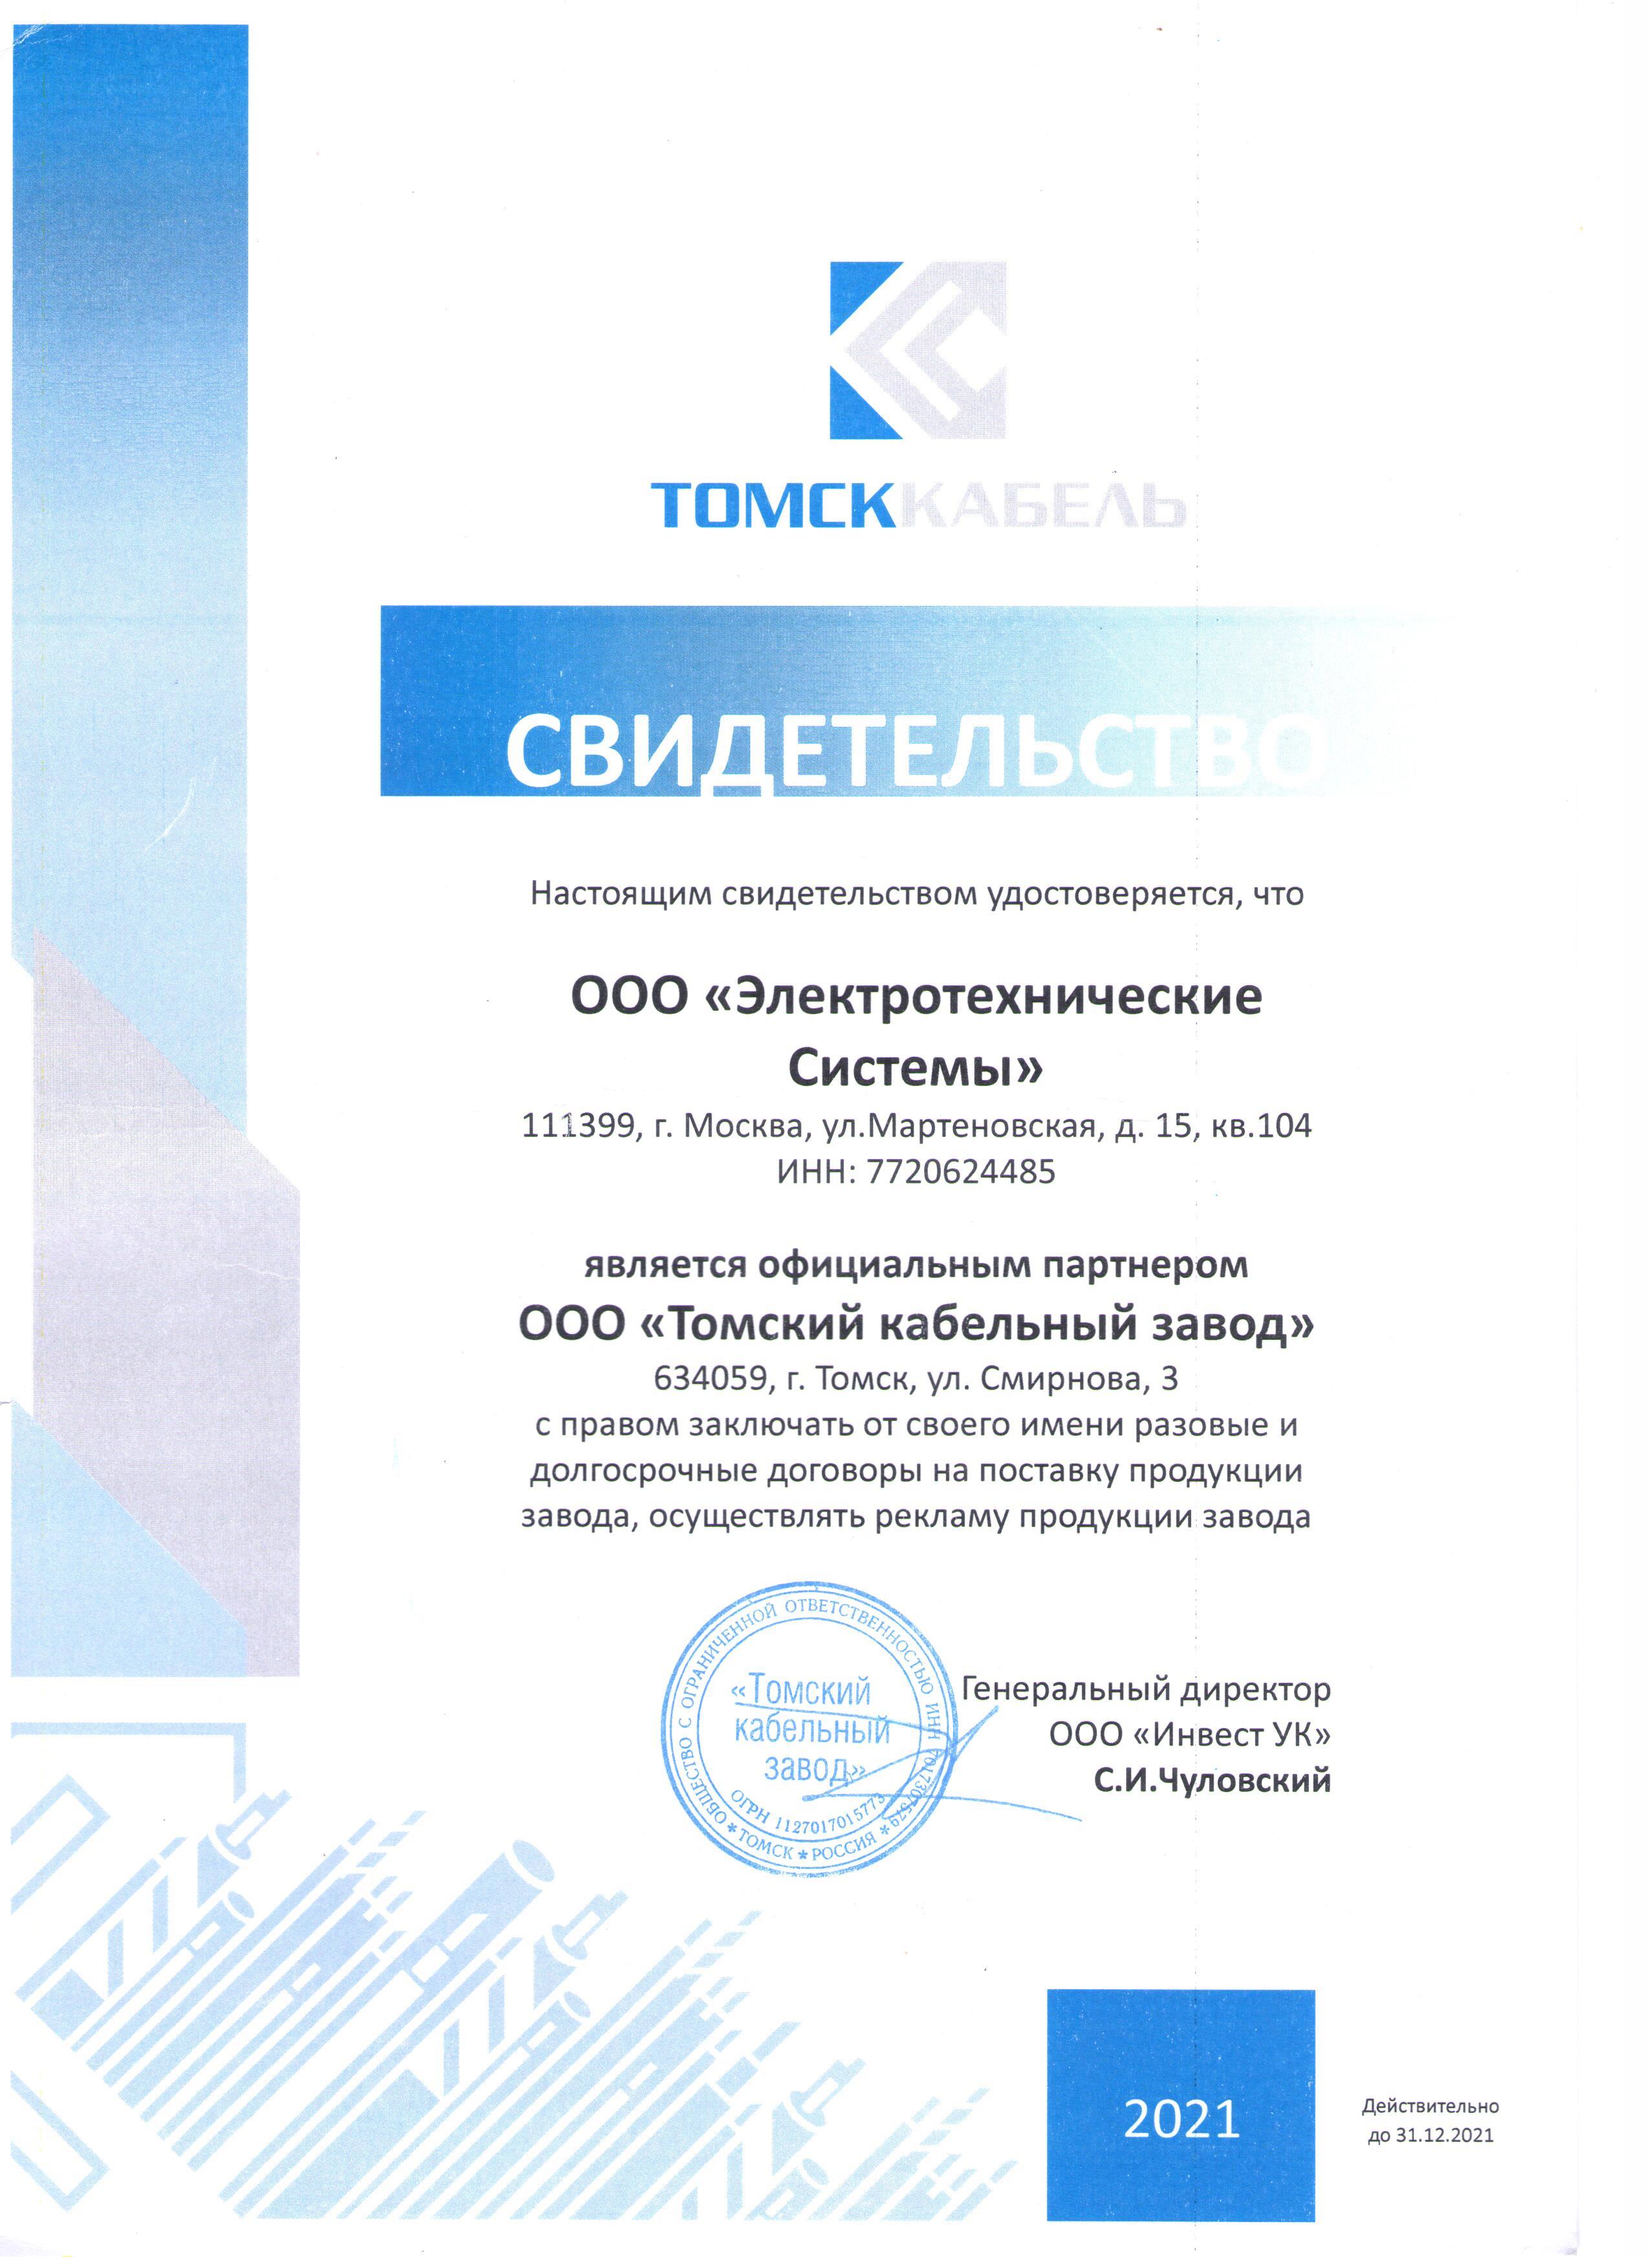 Получен сертификат официального партнера Томский кабельный завод